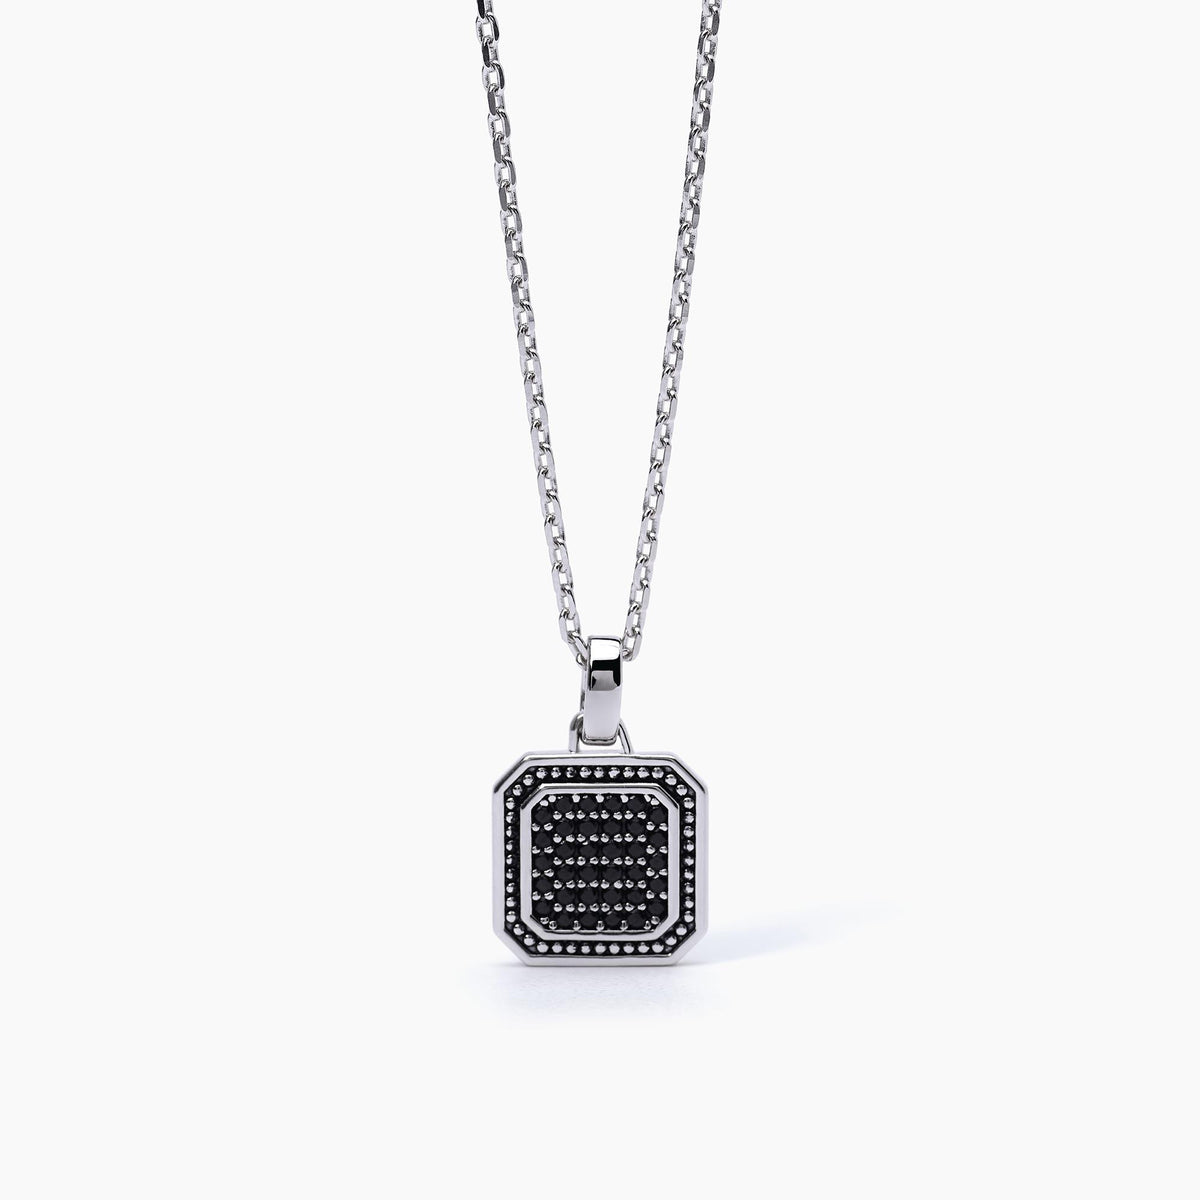 Men's necklace in silver Mabina Gioielli 553483